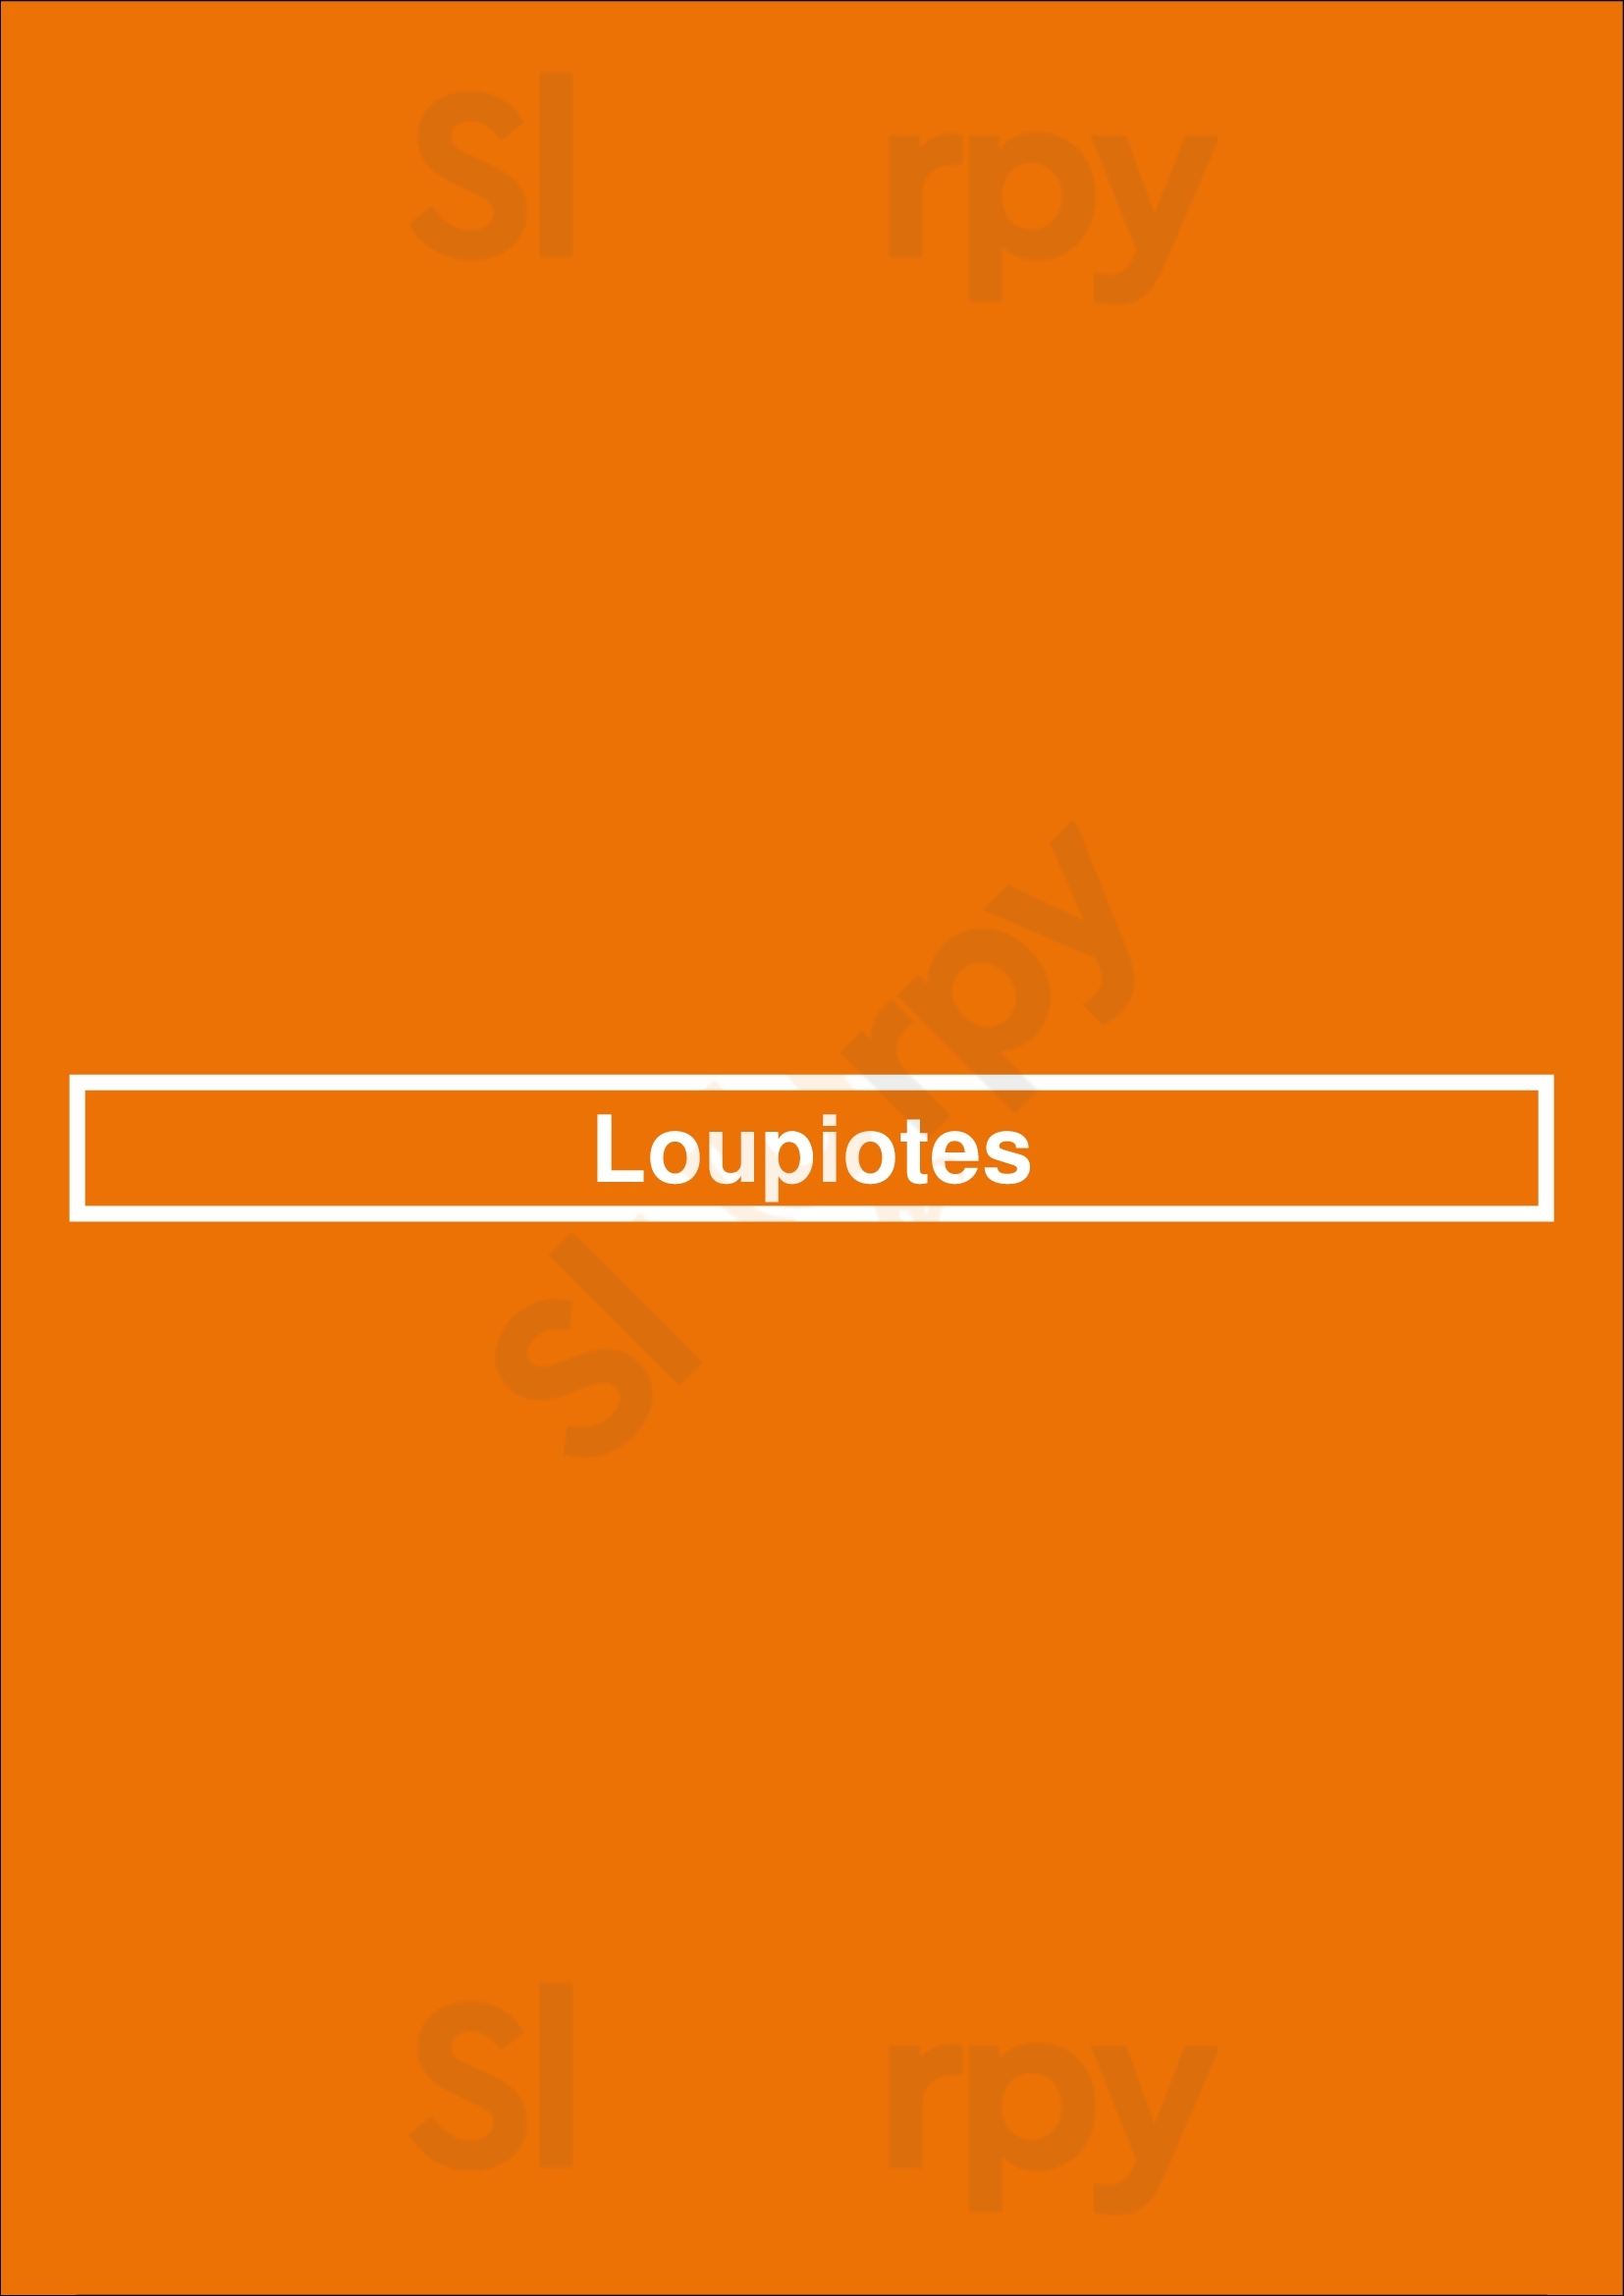 Loupiotes Paris Menu - 1